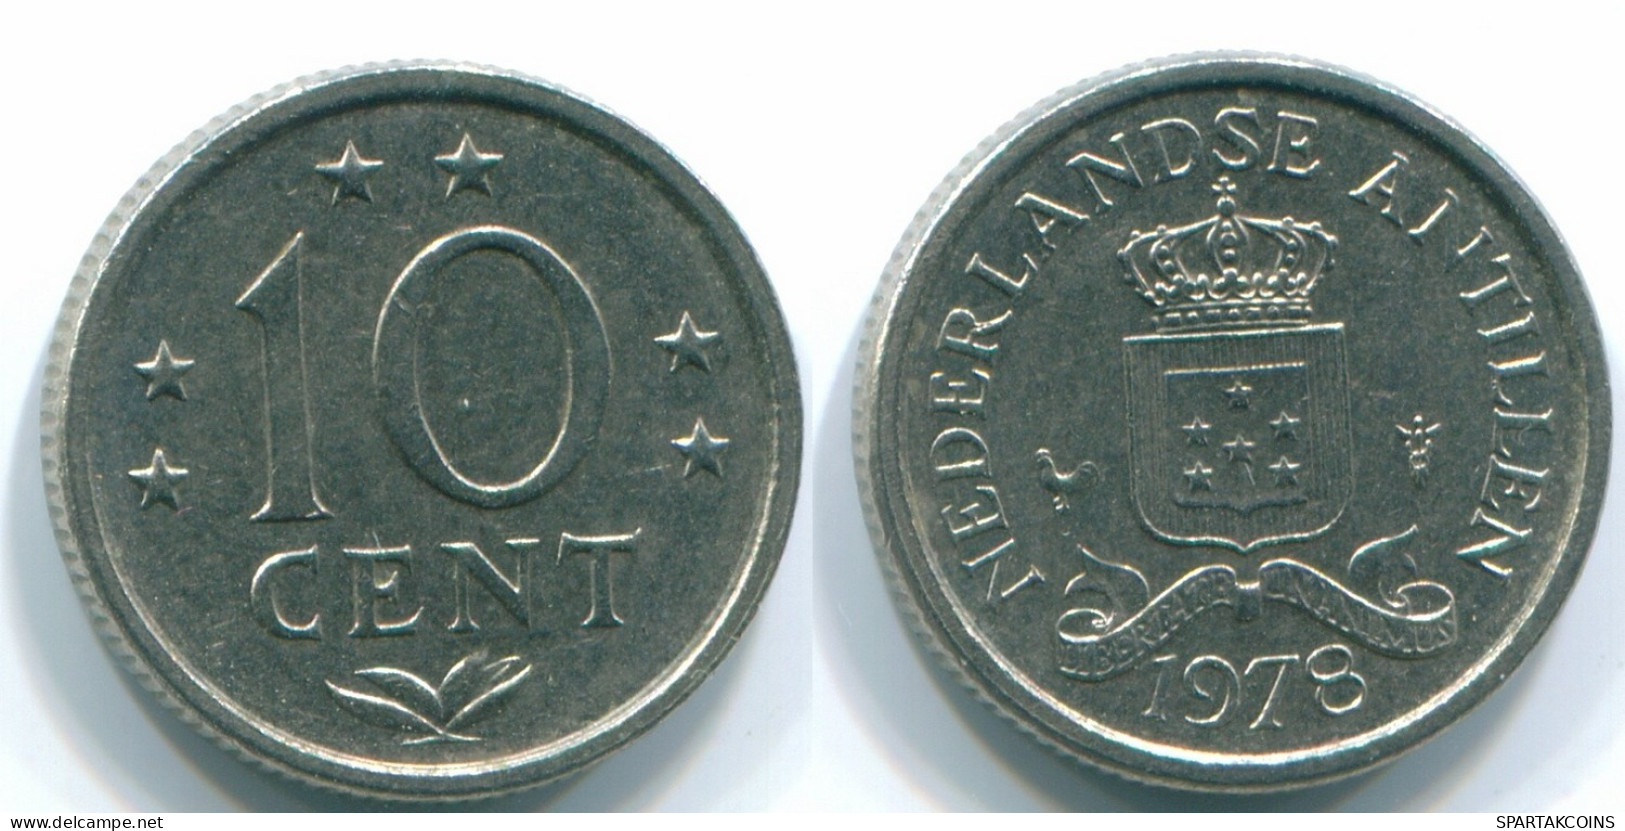 10 CENTS 1978 NETHERLANDS ANTILLES Nickel Colonial Coin #S13556.U.A - Niederländische Antillen